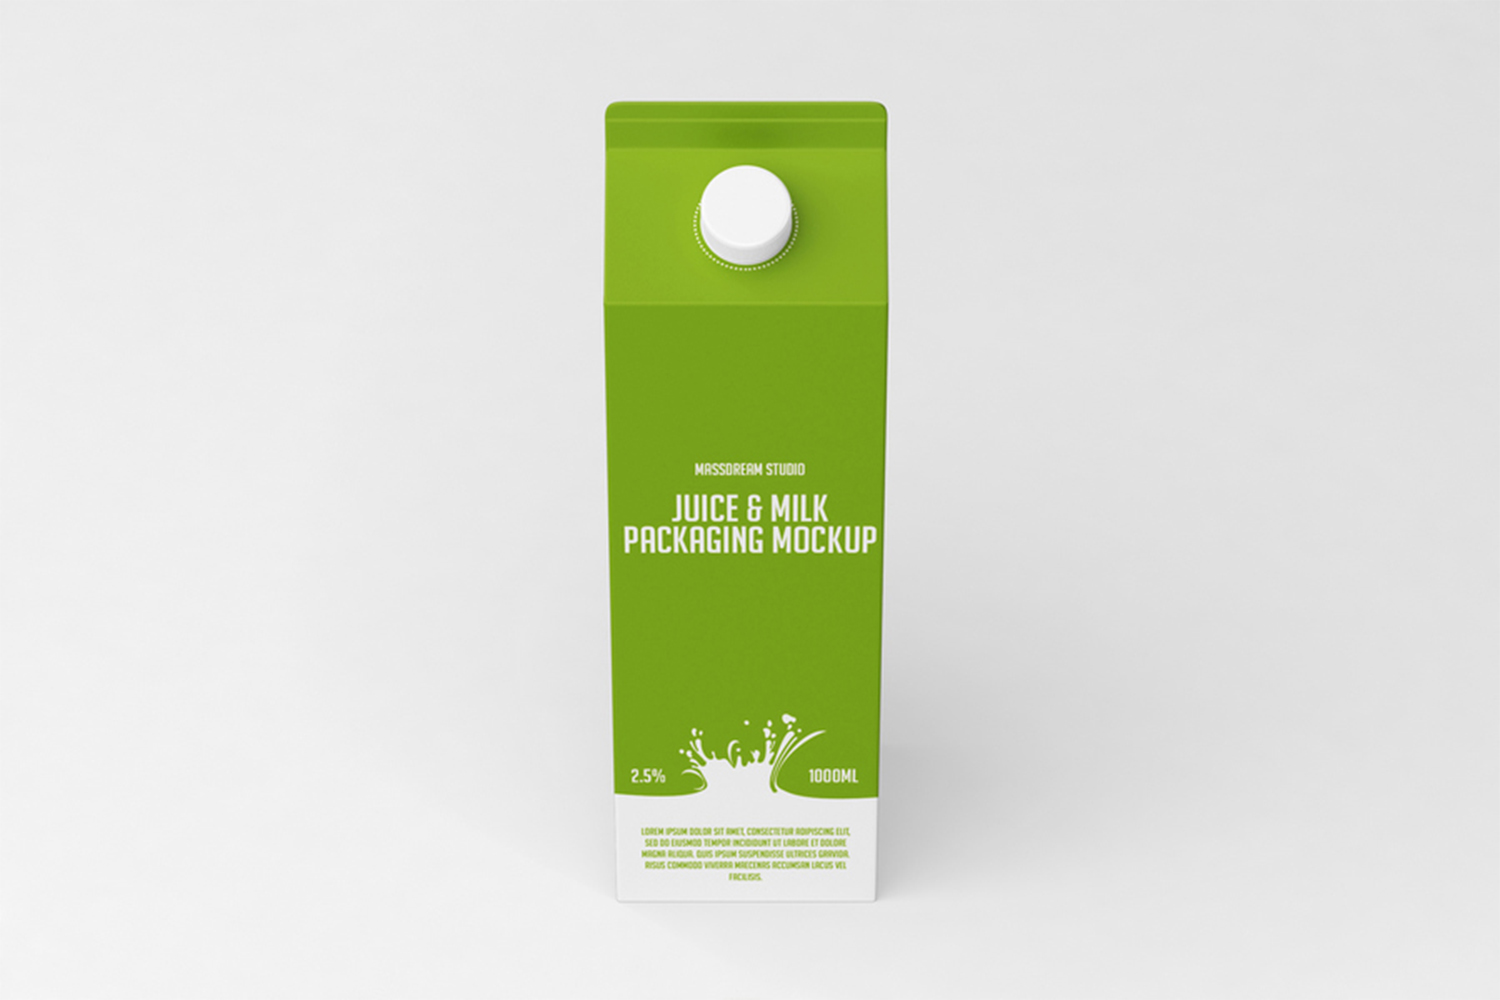 Juice Packaging Mockup Free Download